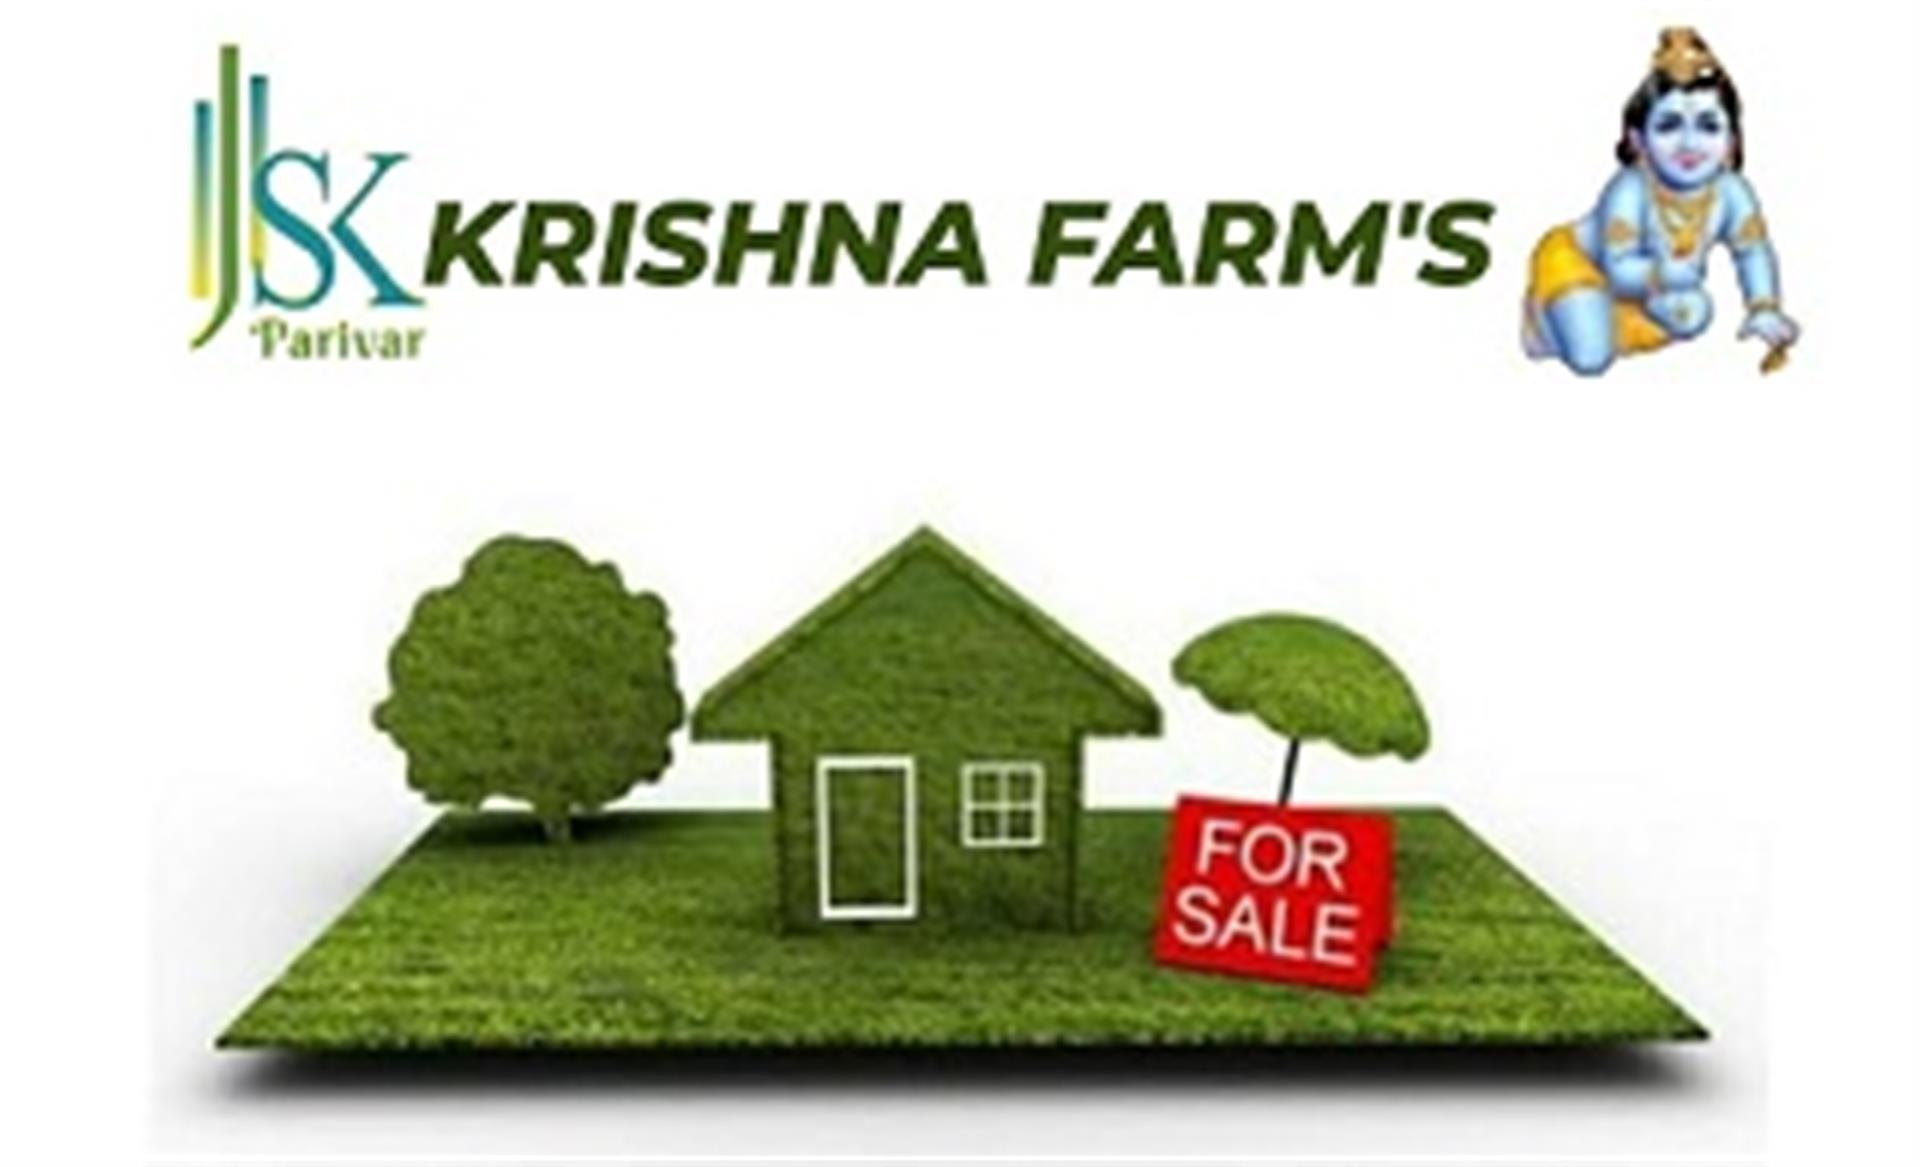 krishna-farm-house-kolar-road-bhopal-farm-house